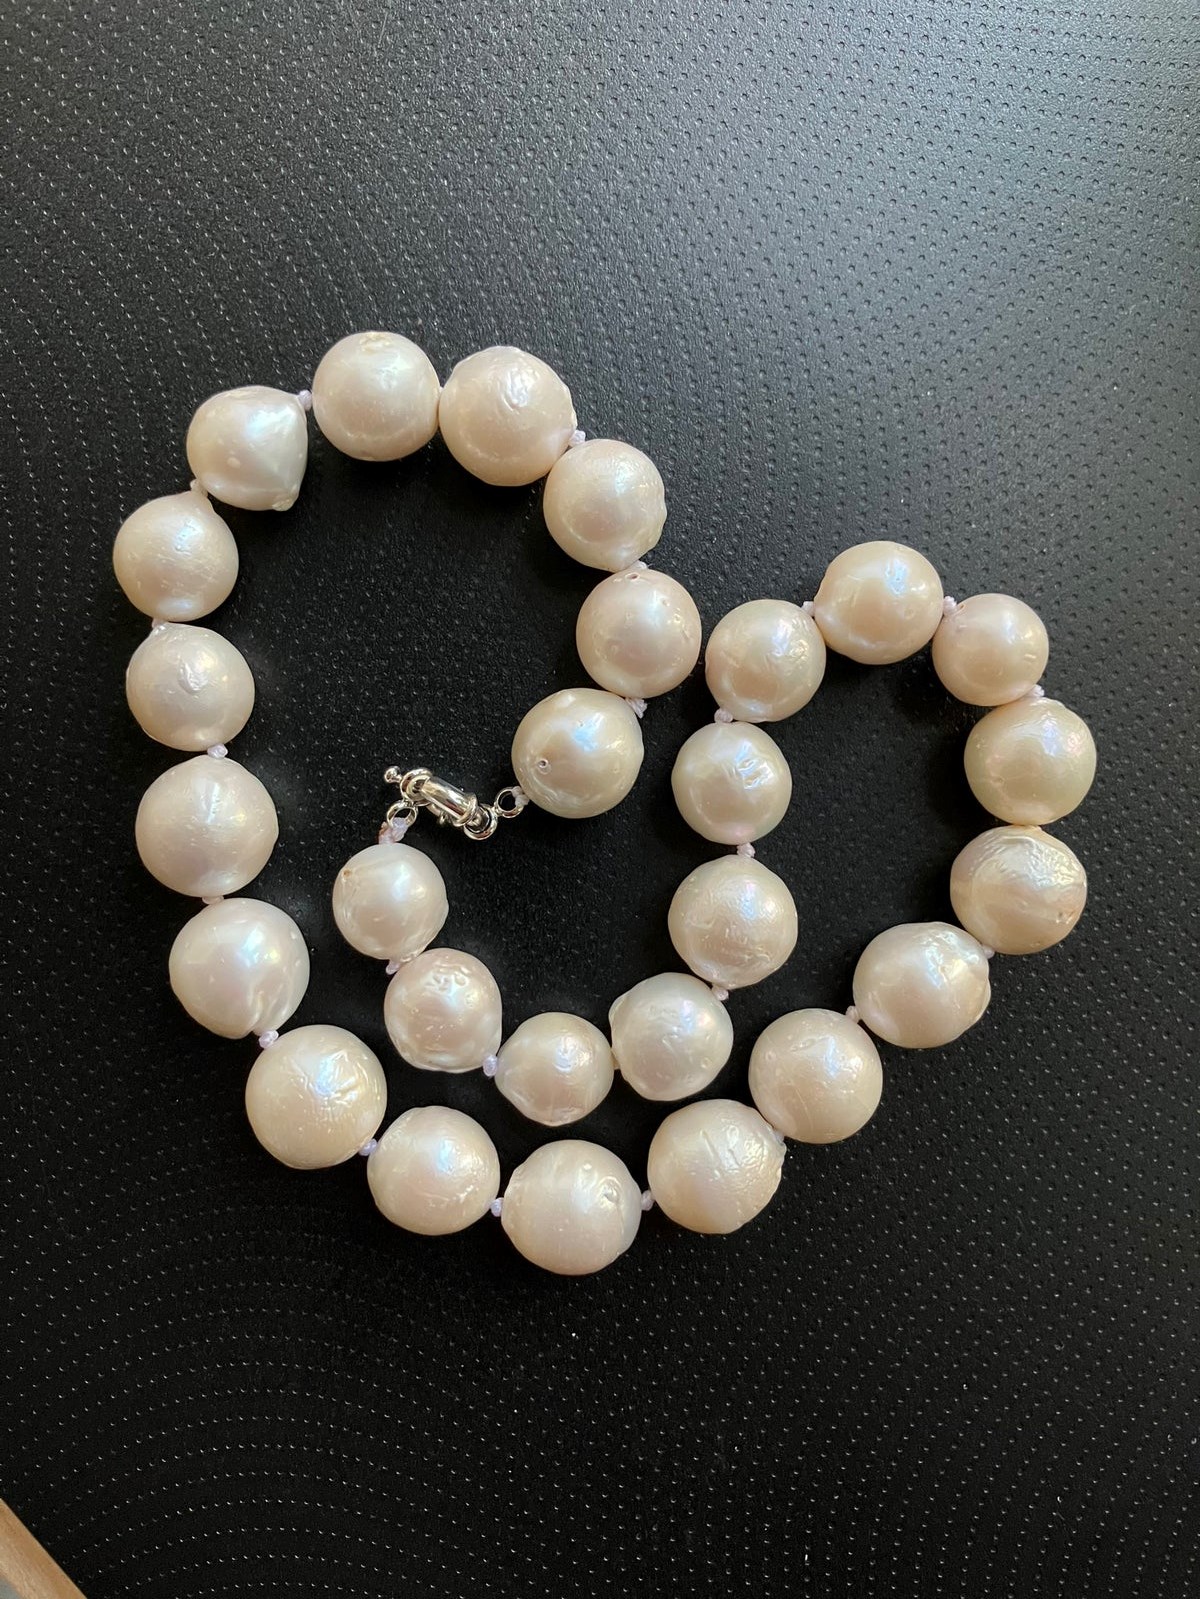  Halskæden med South Sea-perler fra Australien sælger Steen i Humlebæk for 1.200. Standen er perfekt, og perlekæden fremstår derfor som ny, skriver han i annoncen.